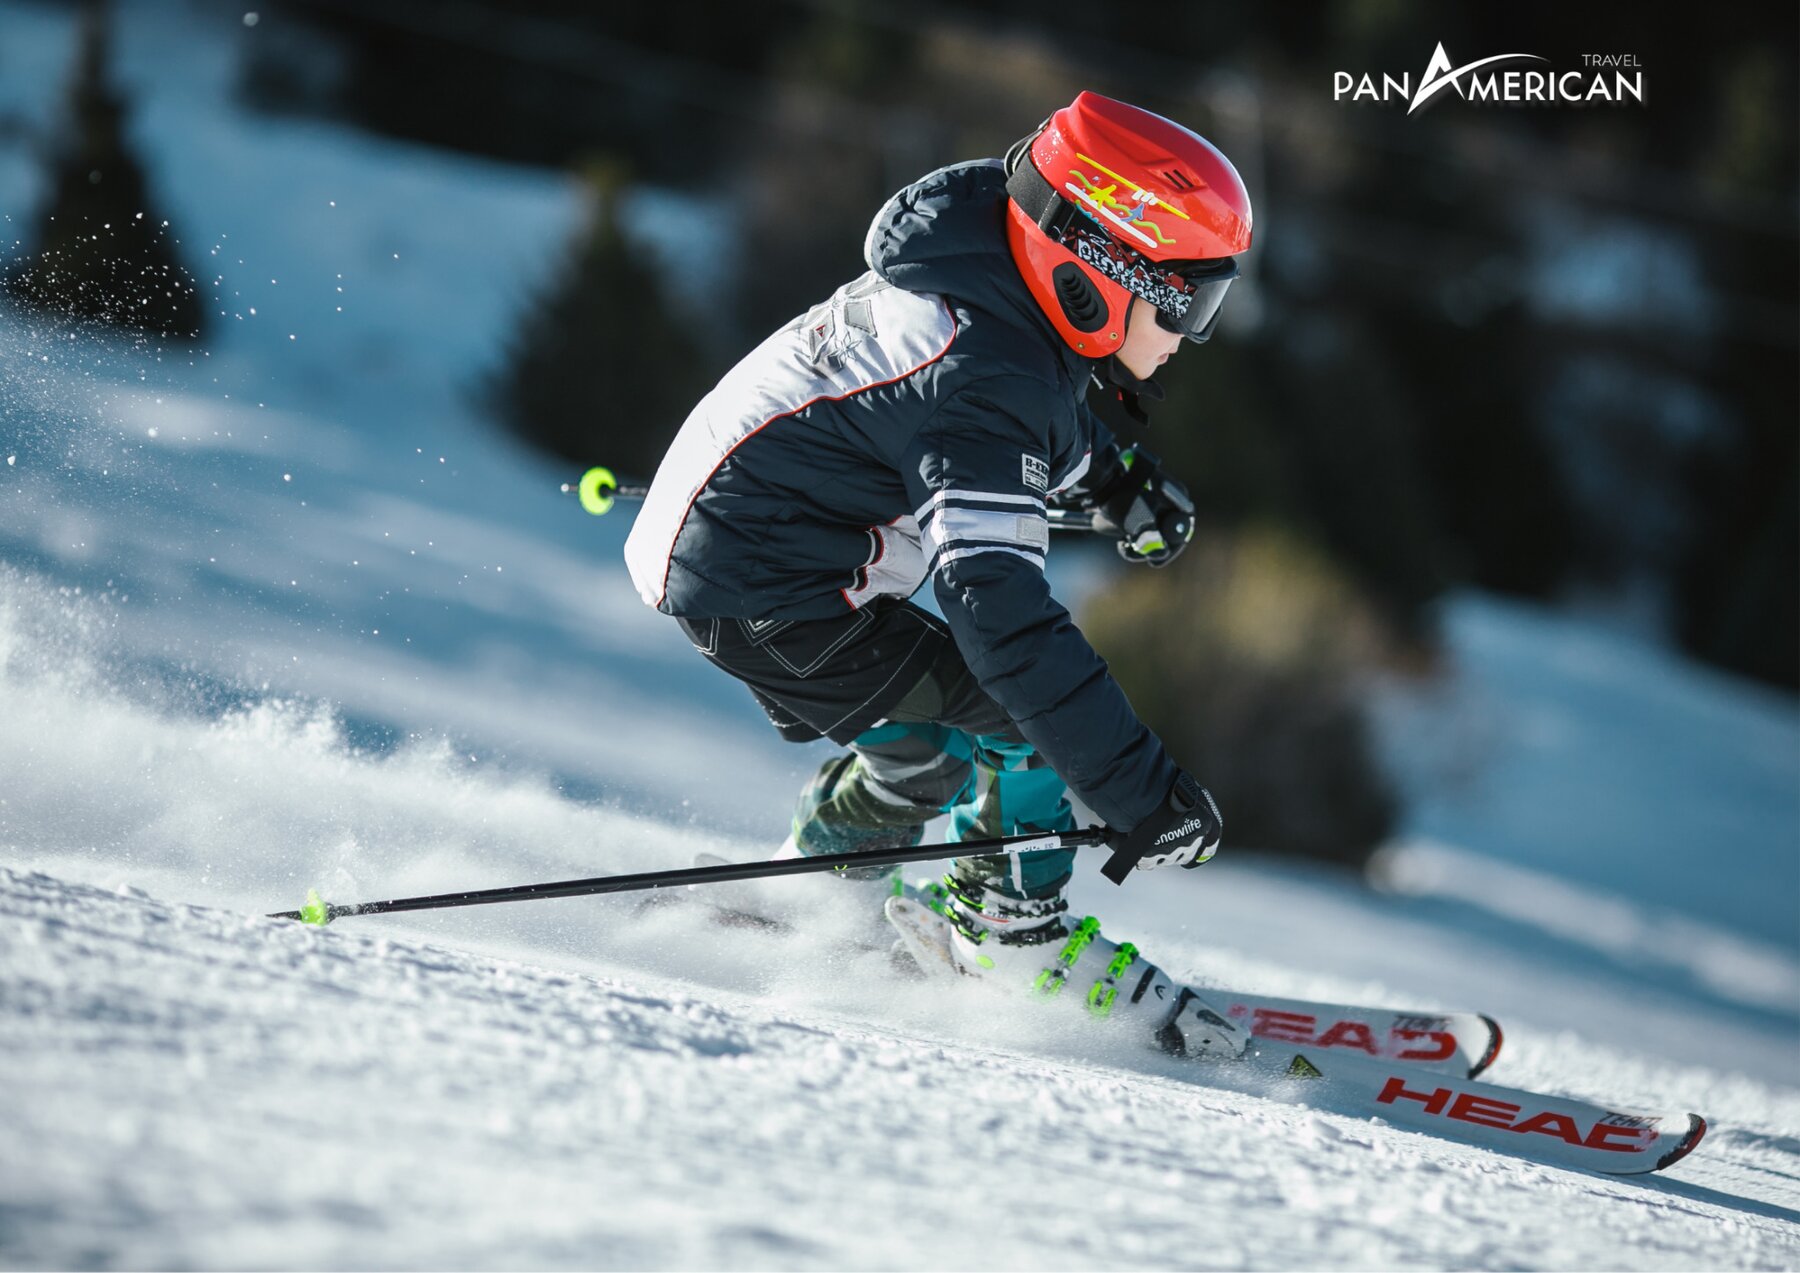 Trượt tuyết hoạt động được du khách ưa thích khi đến Titlis